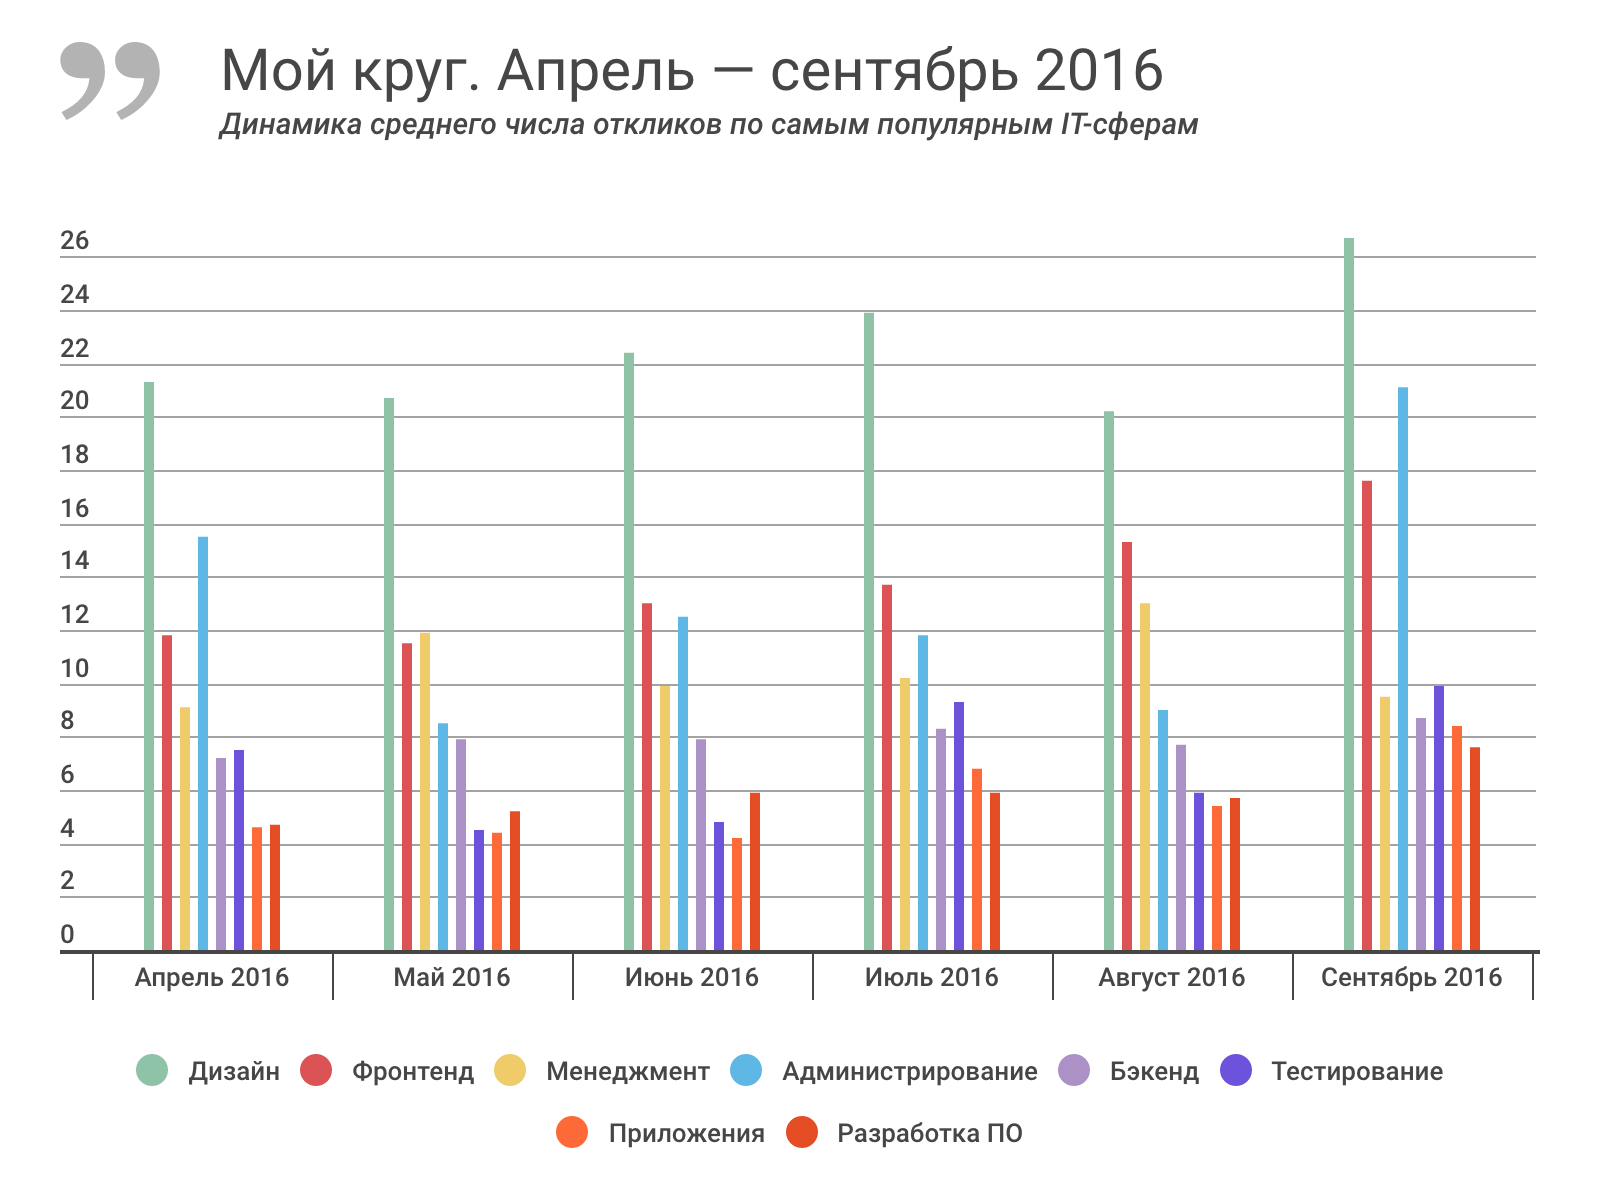 Отчет о результатах «Моего круга» за сентябрь 2016, и самые популярные вакансии месяца - 2